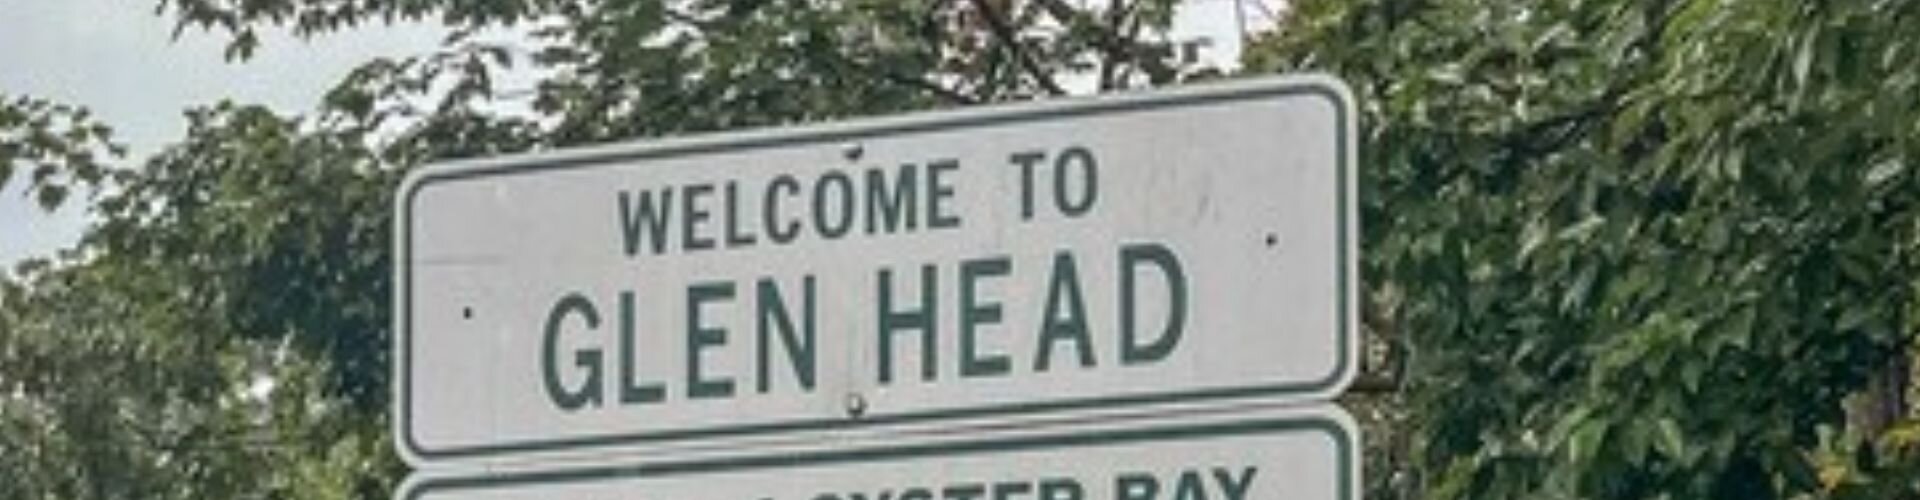 Glen Head - Cash Buyers in Long Island